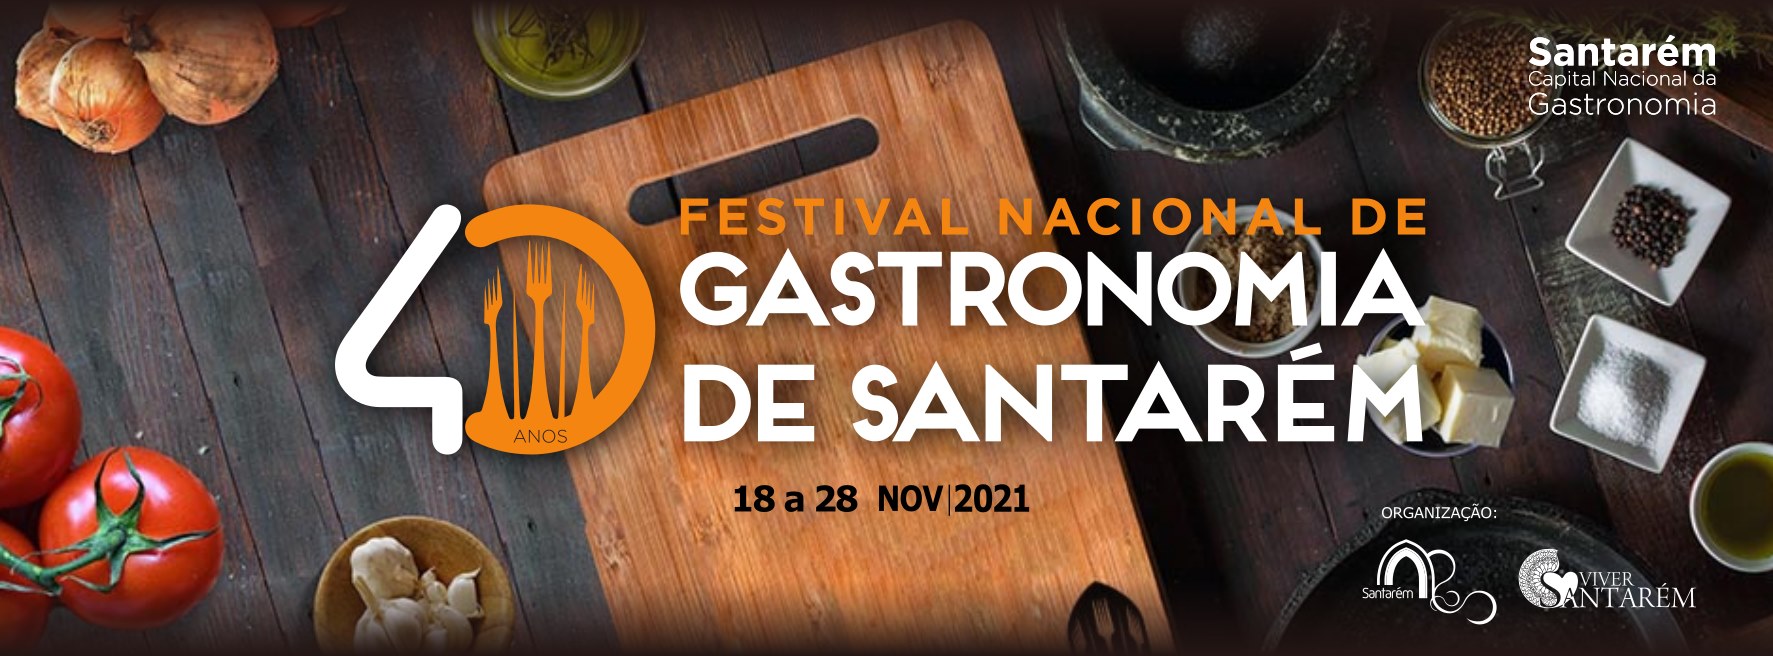 Palmela presente no Festival Nacional de Gastronomia de Santarém